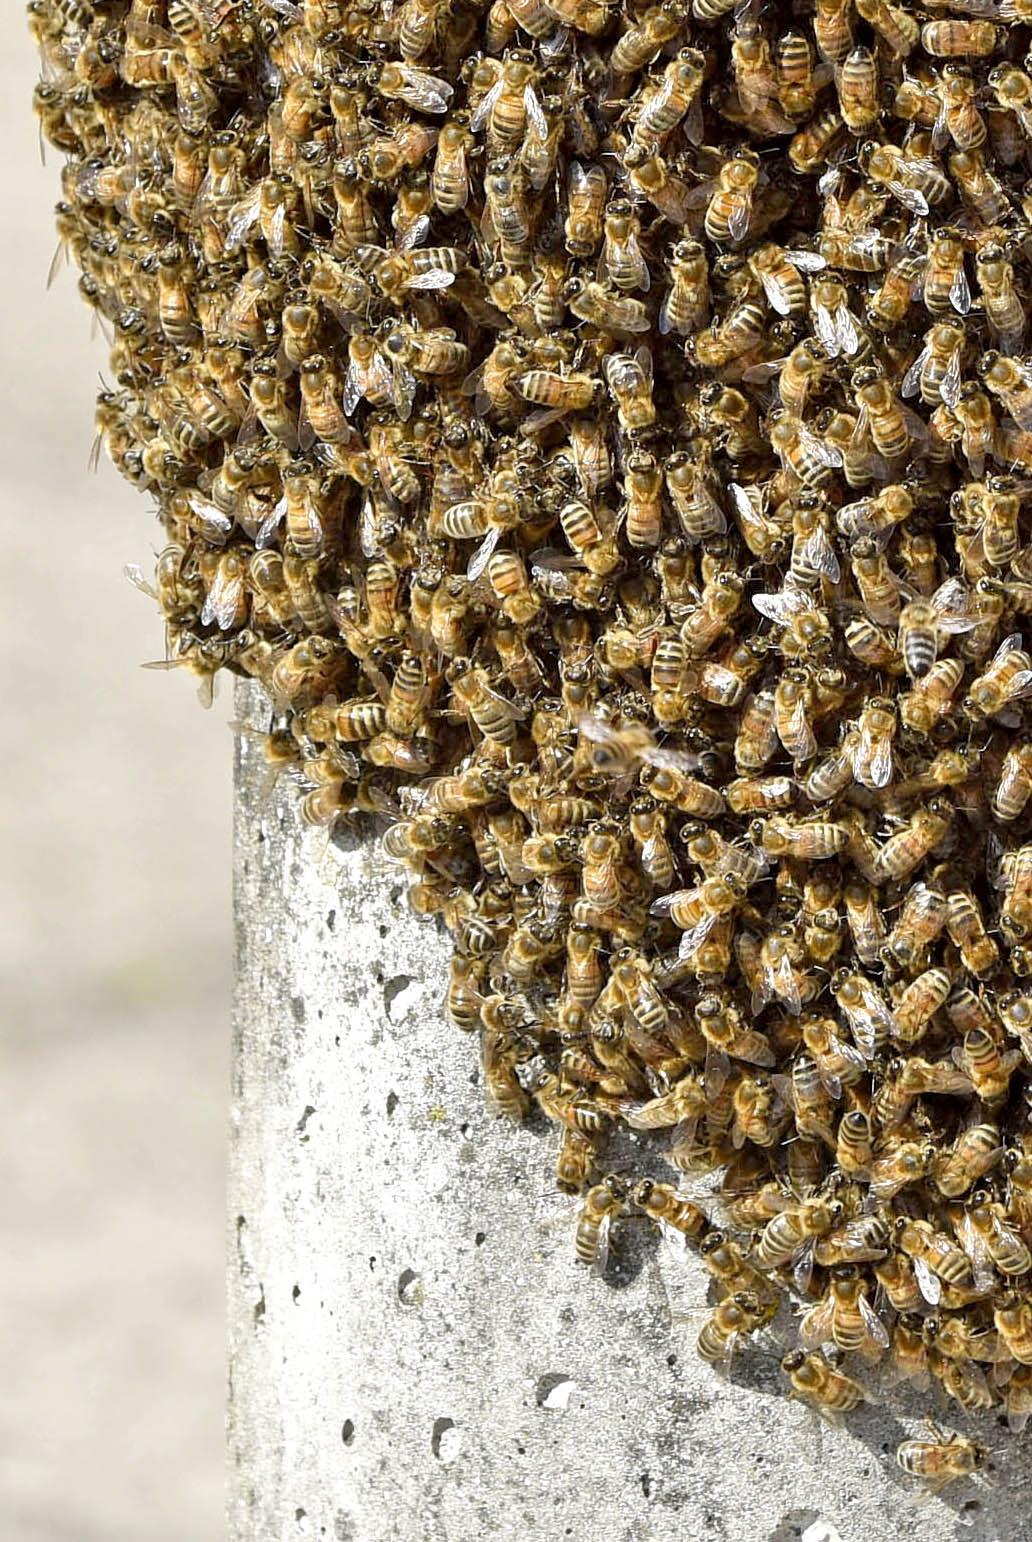 Southampton bee swarm